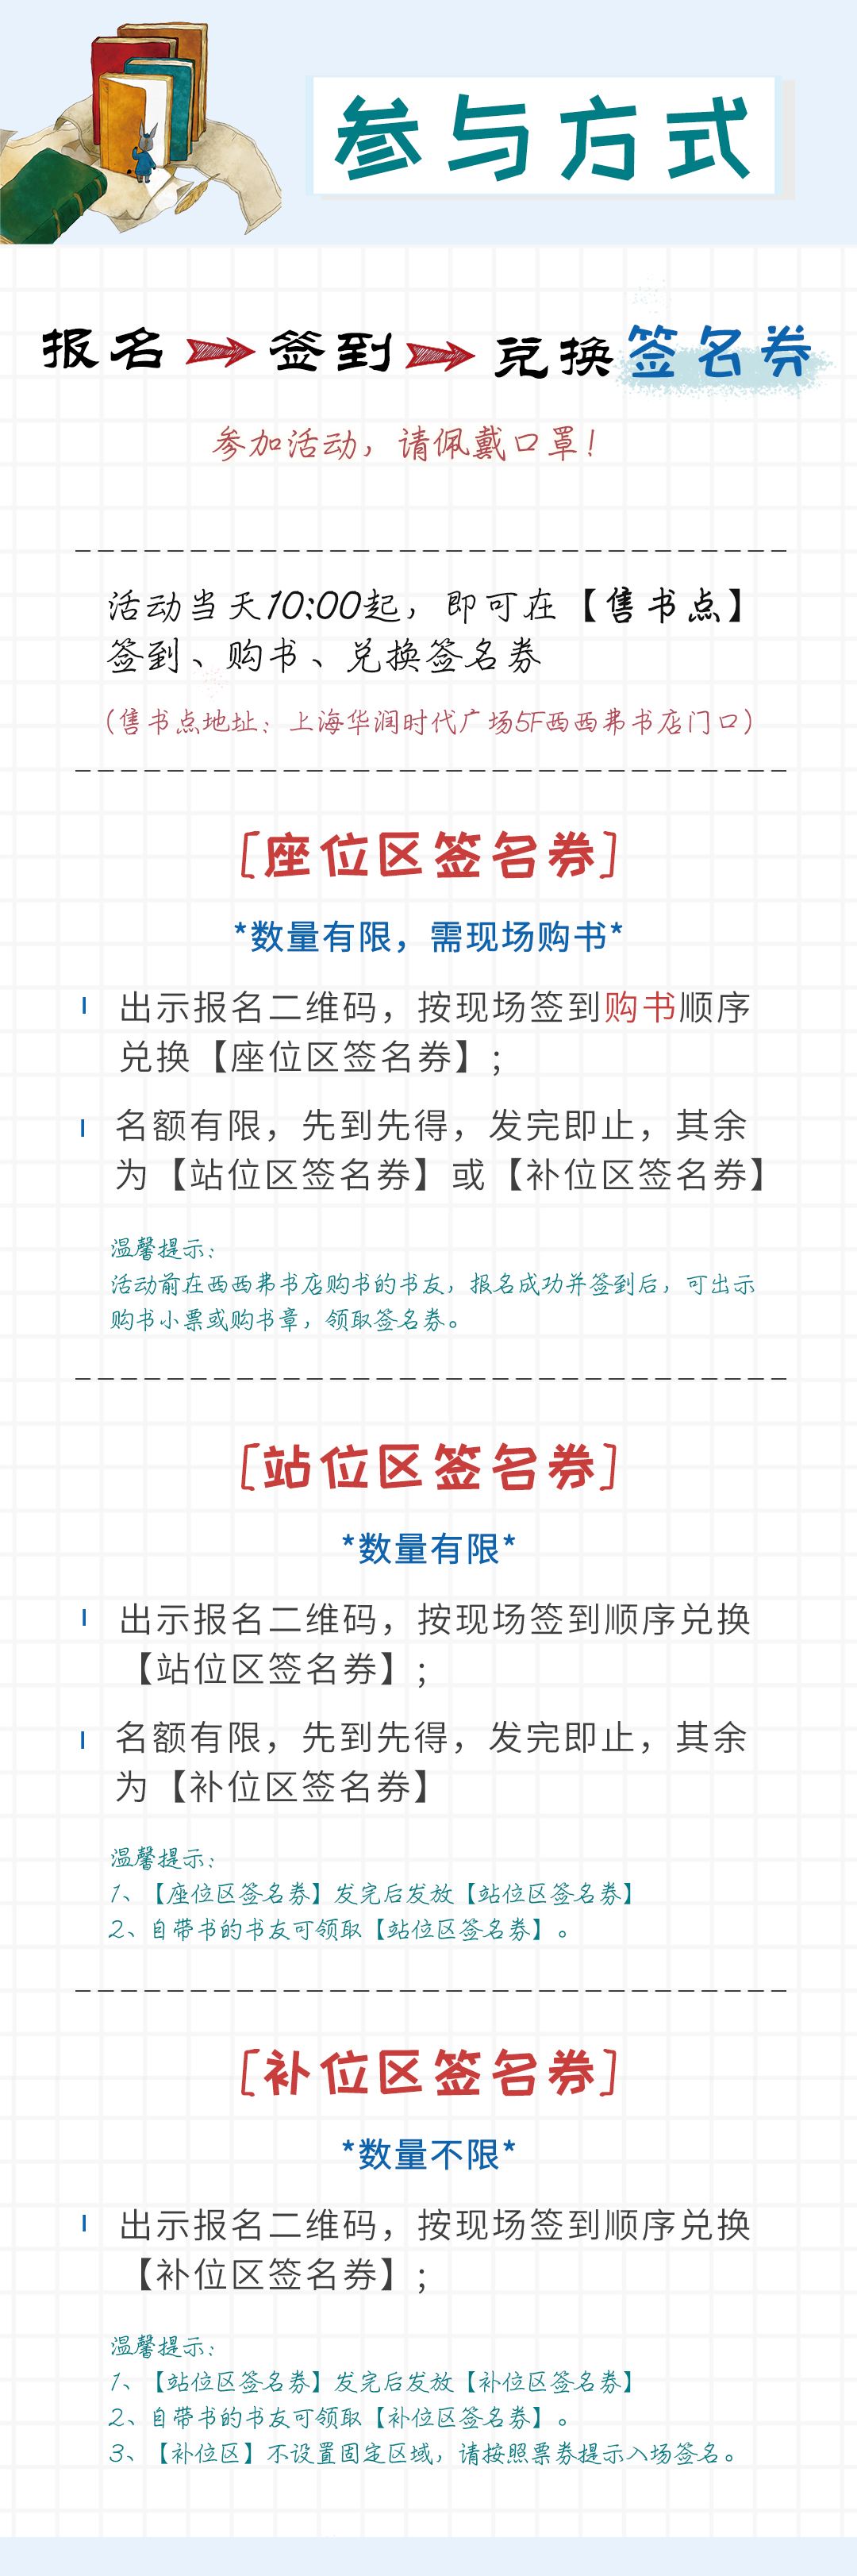 上海-活动行内页-活动规则.jpg